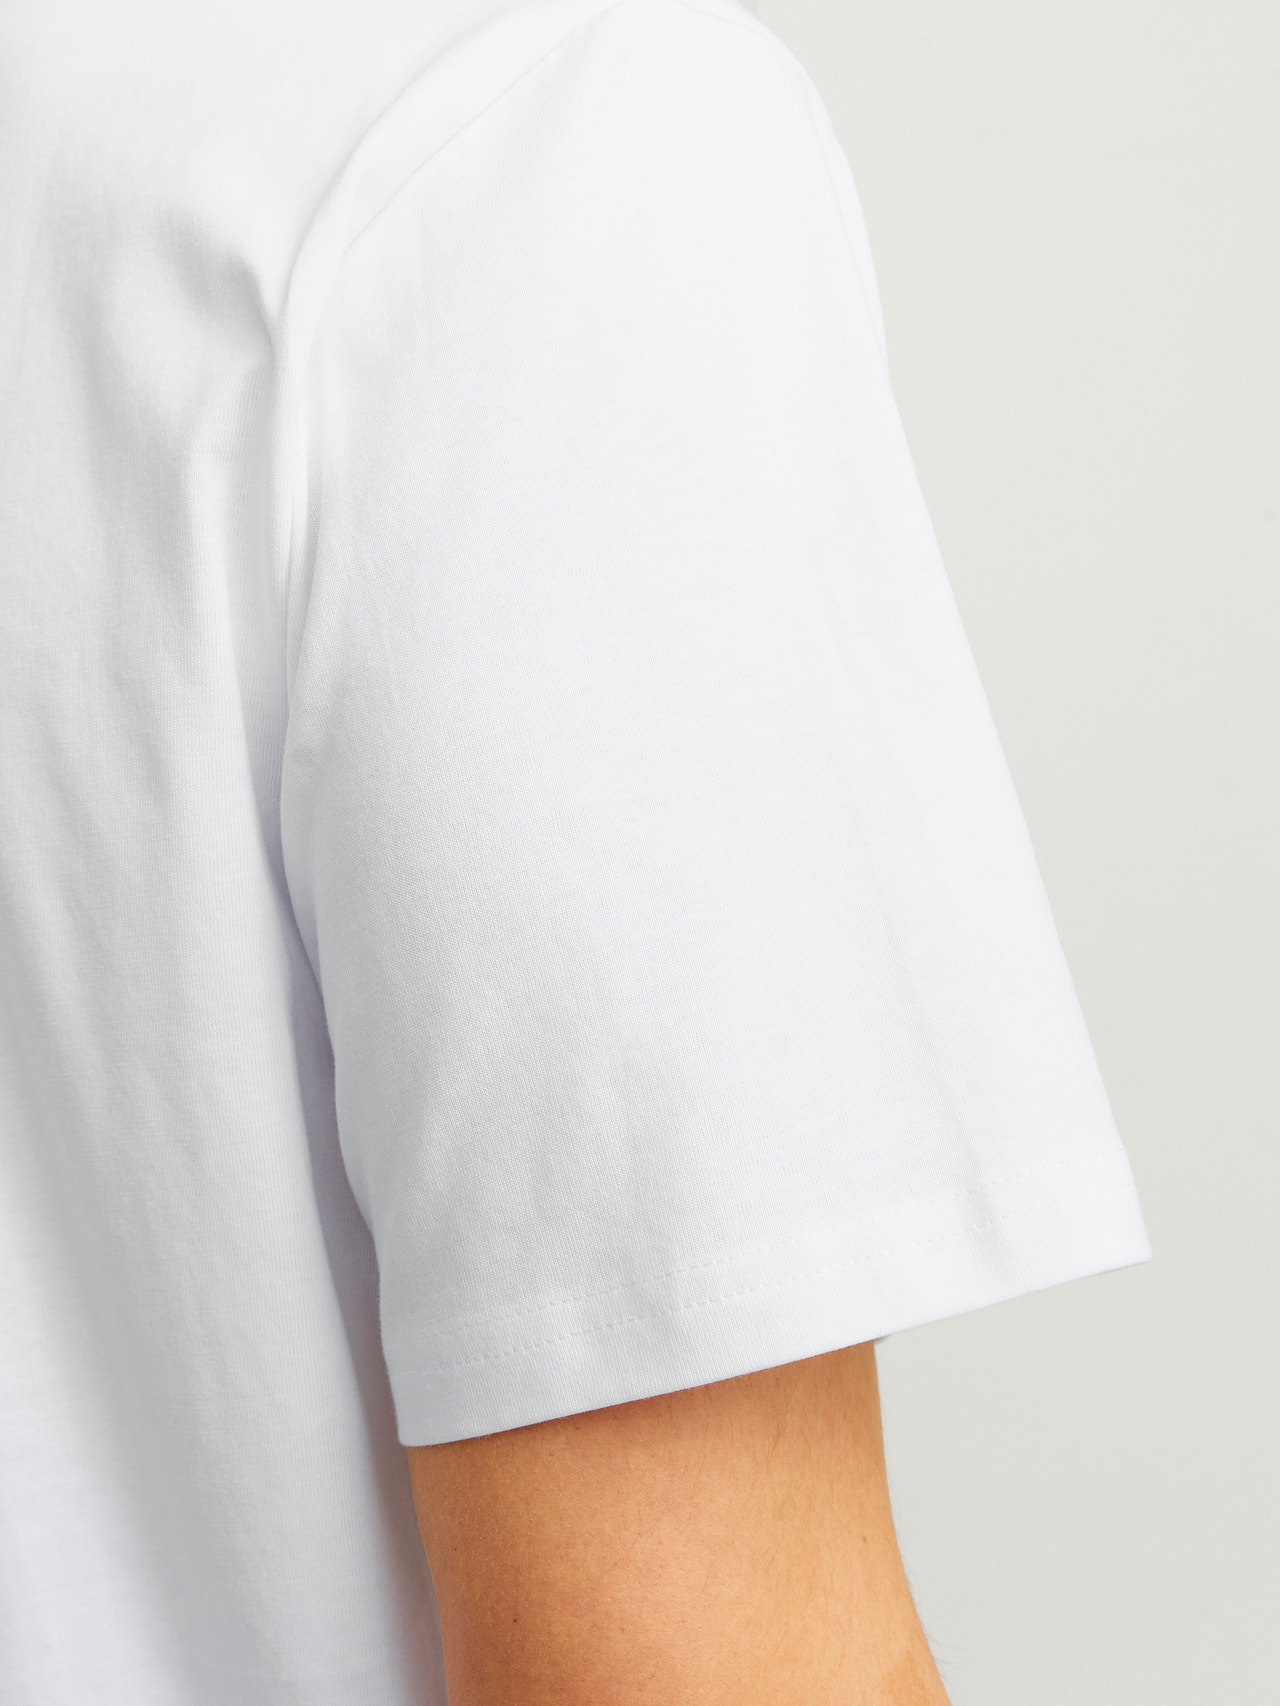 Jack & Jones Gedruckt Rundhals T-shirt -Bright White - 12250421